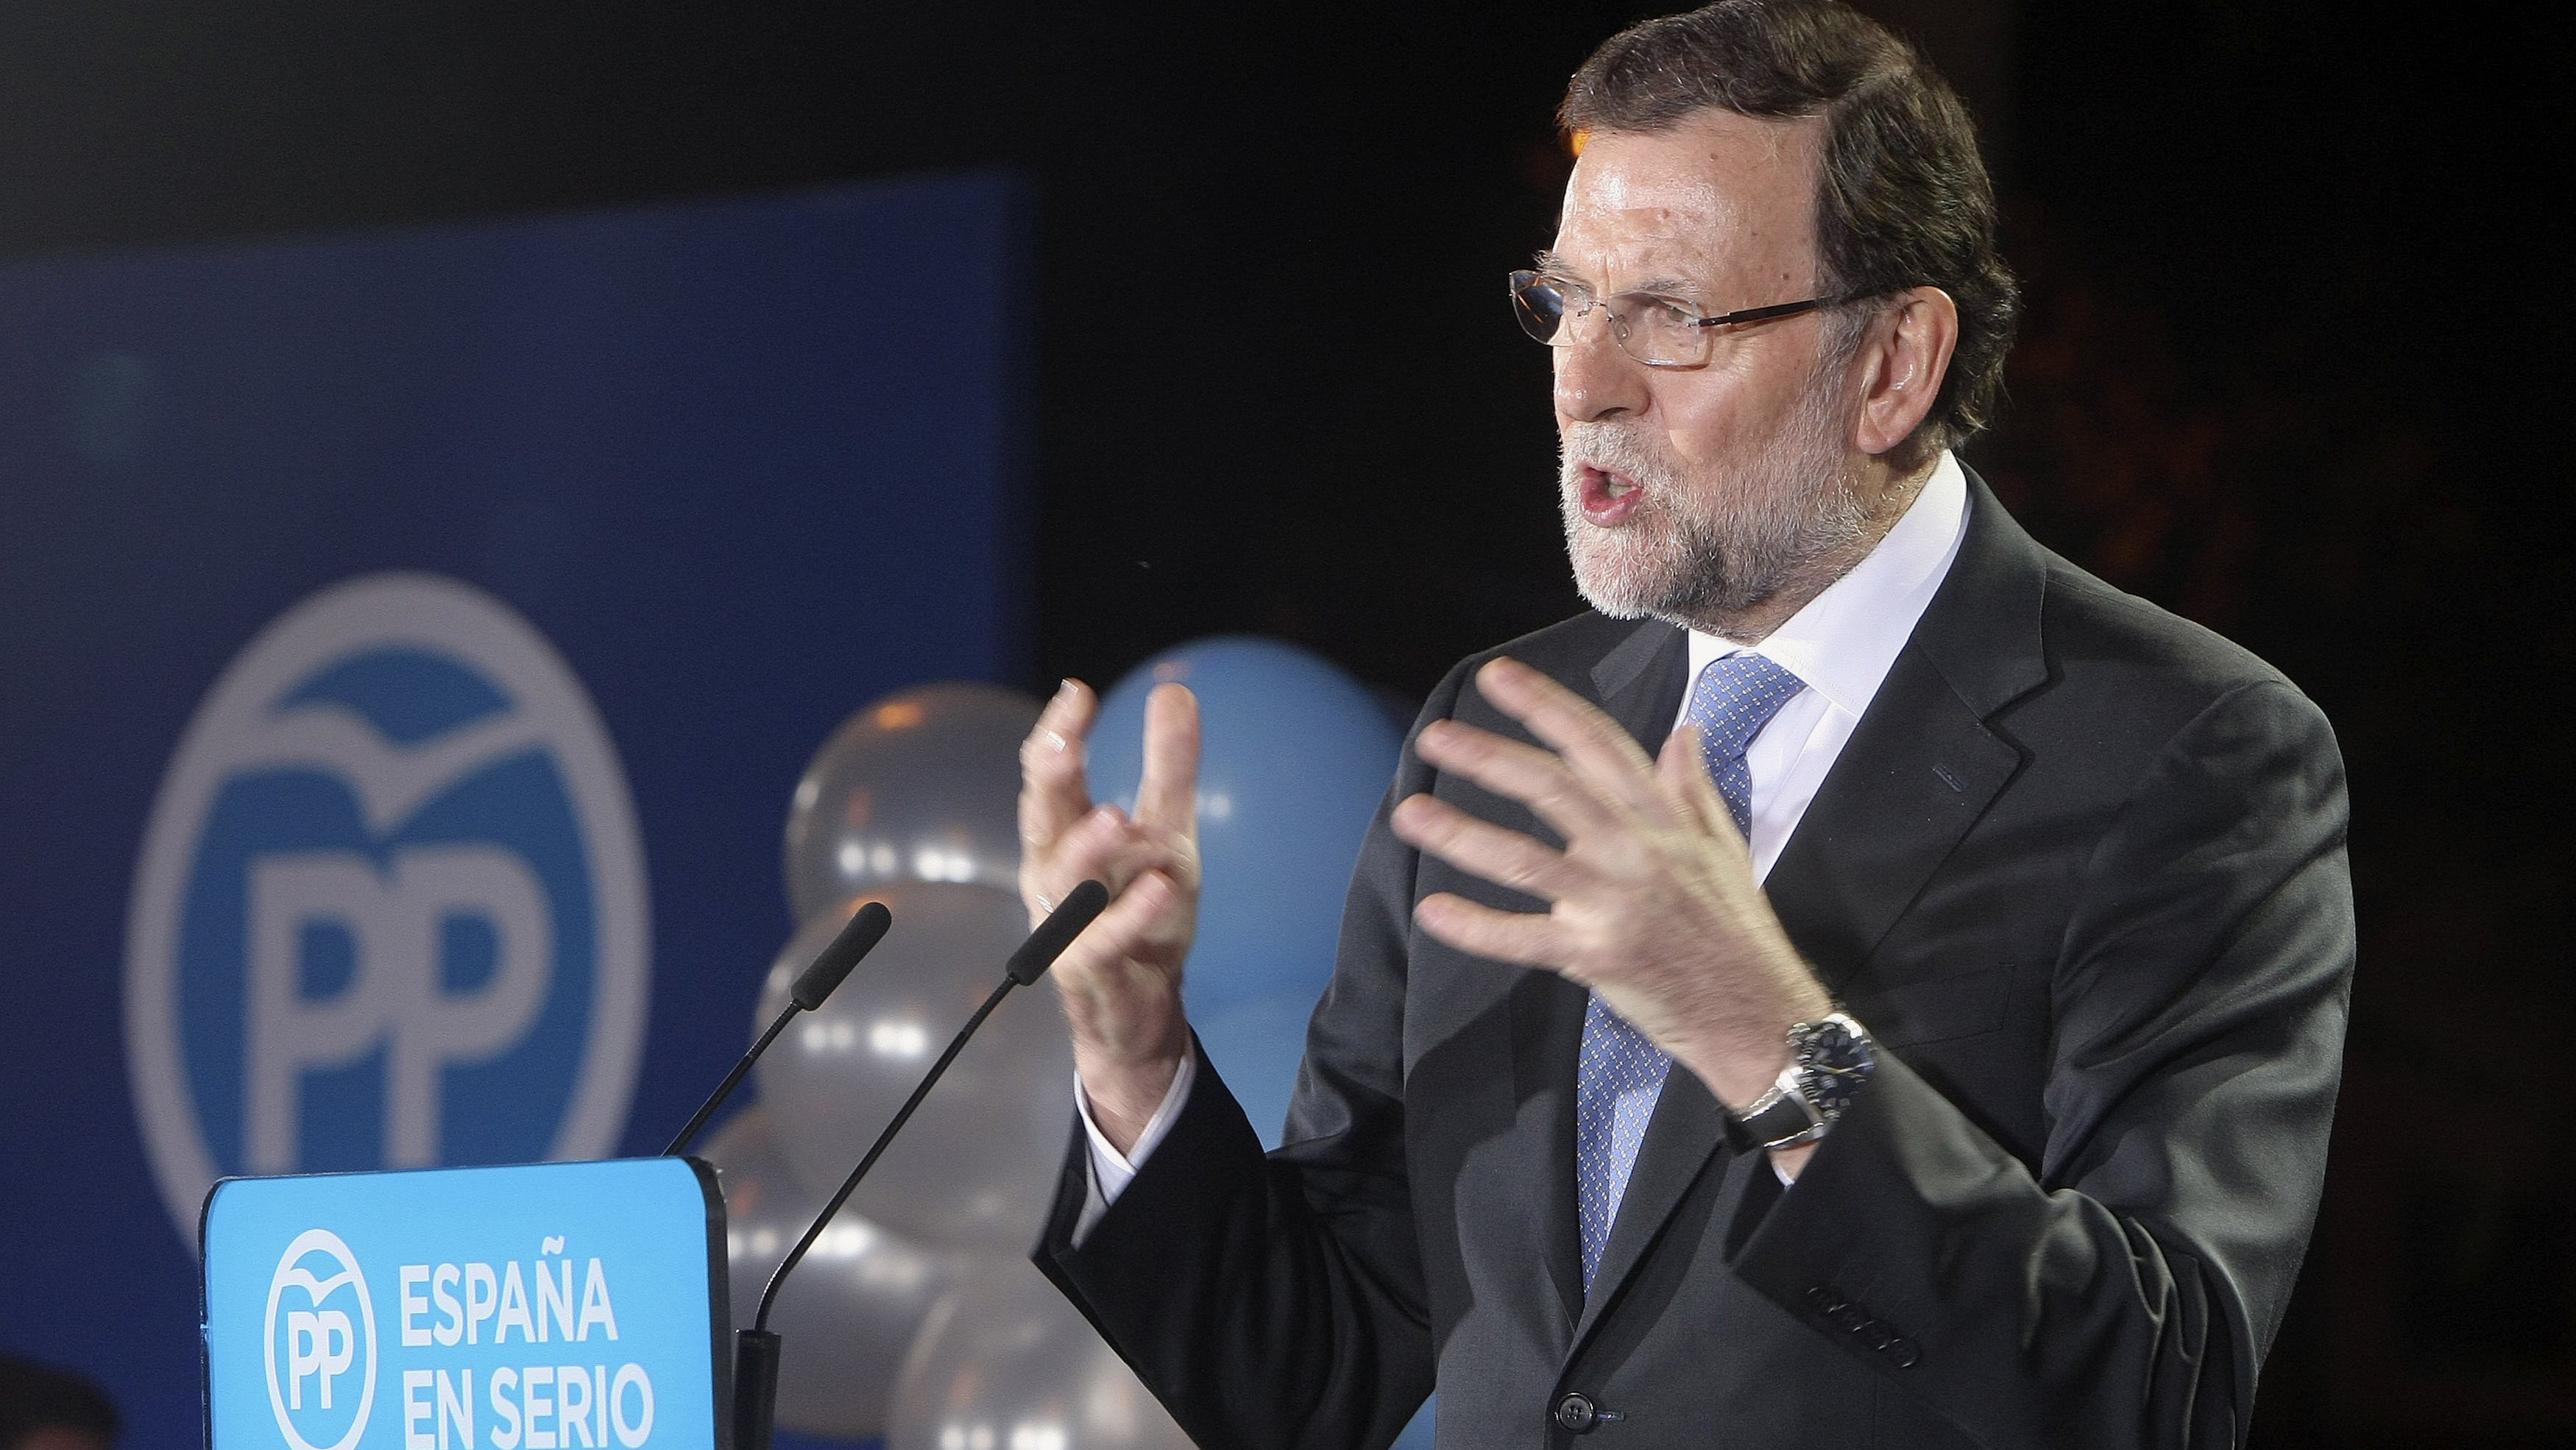 La venganza de un joven de 19 años contra Rajoy